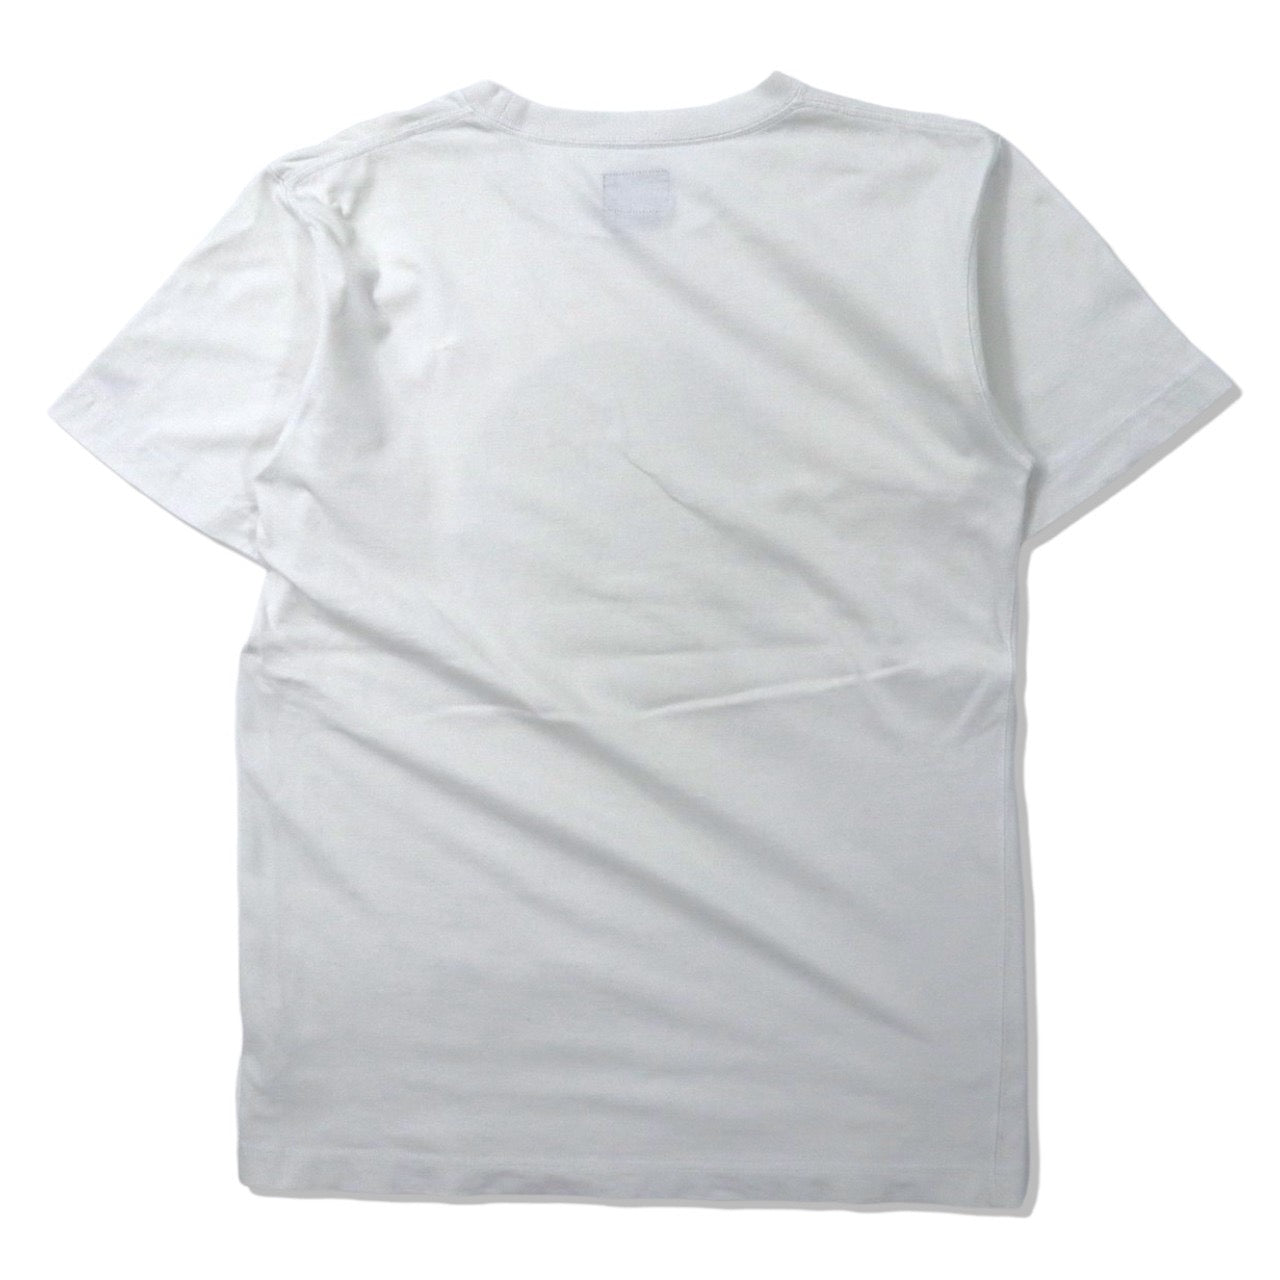 NEW ERA ステッカーロゴプリントTシャツ M ホワイト コットン TOKYO